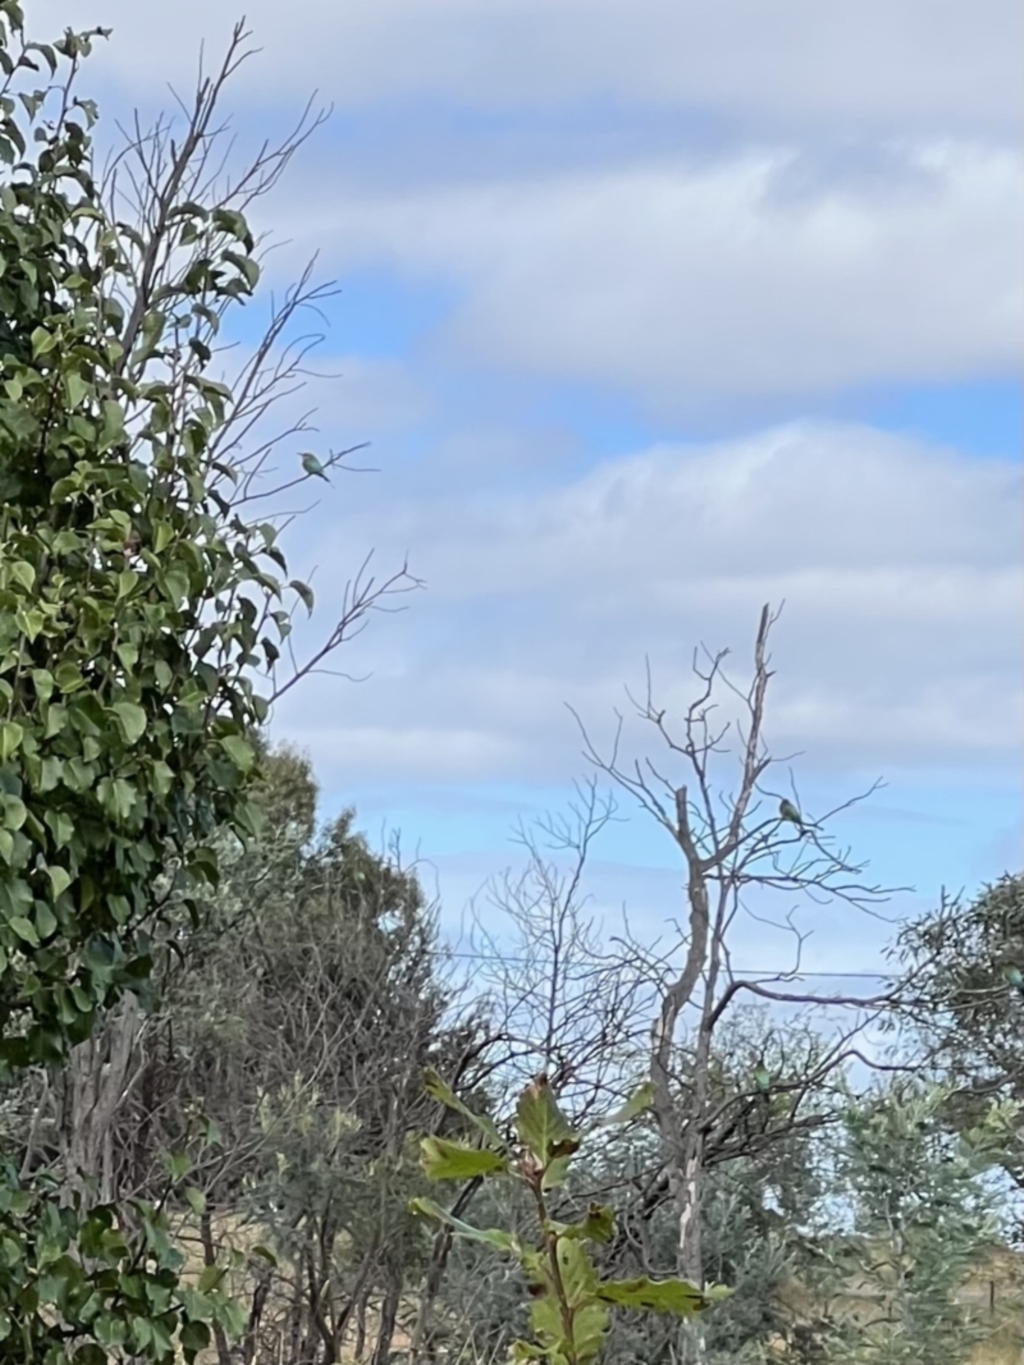 Merops ornatus at Murrumbateman, NSW - 1 Apr 2022